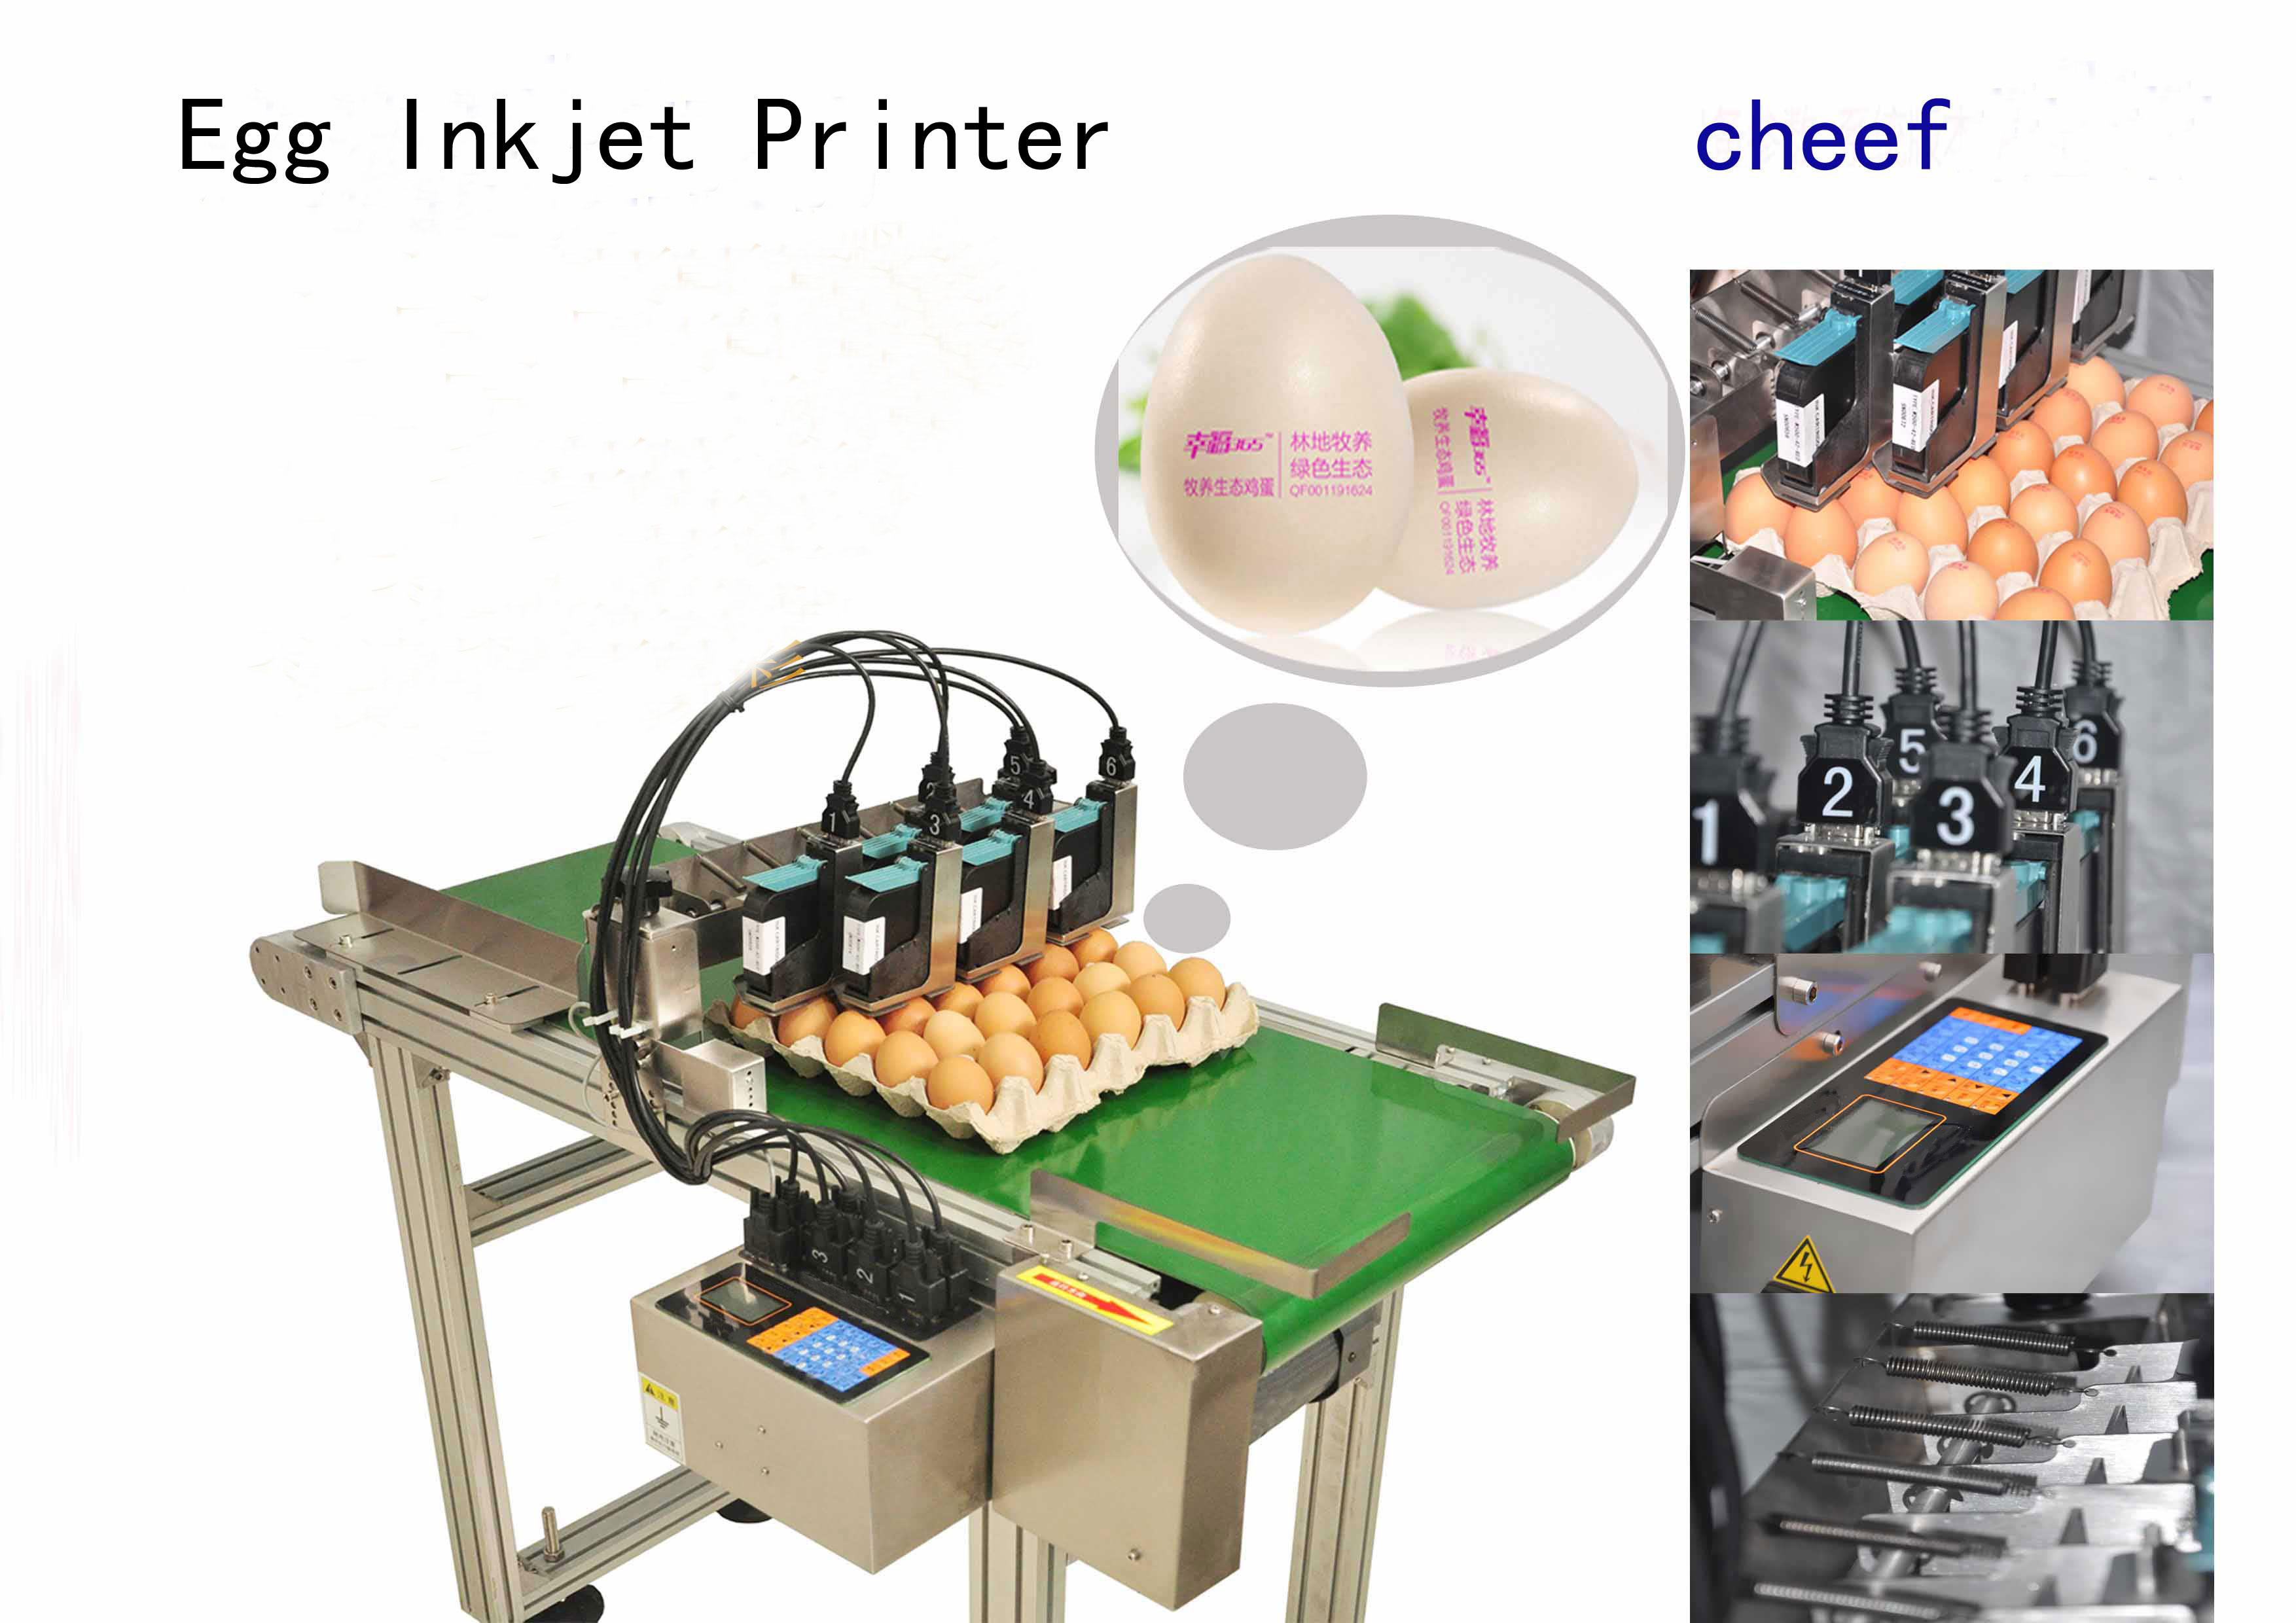 üretici 2 metrelik konveyörlü yüksek verimli yumurtaya özel inkjet yazıcılar tedarik ediyor